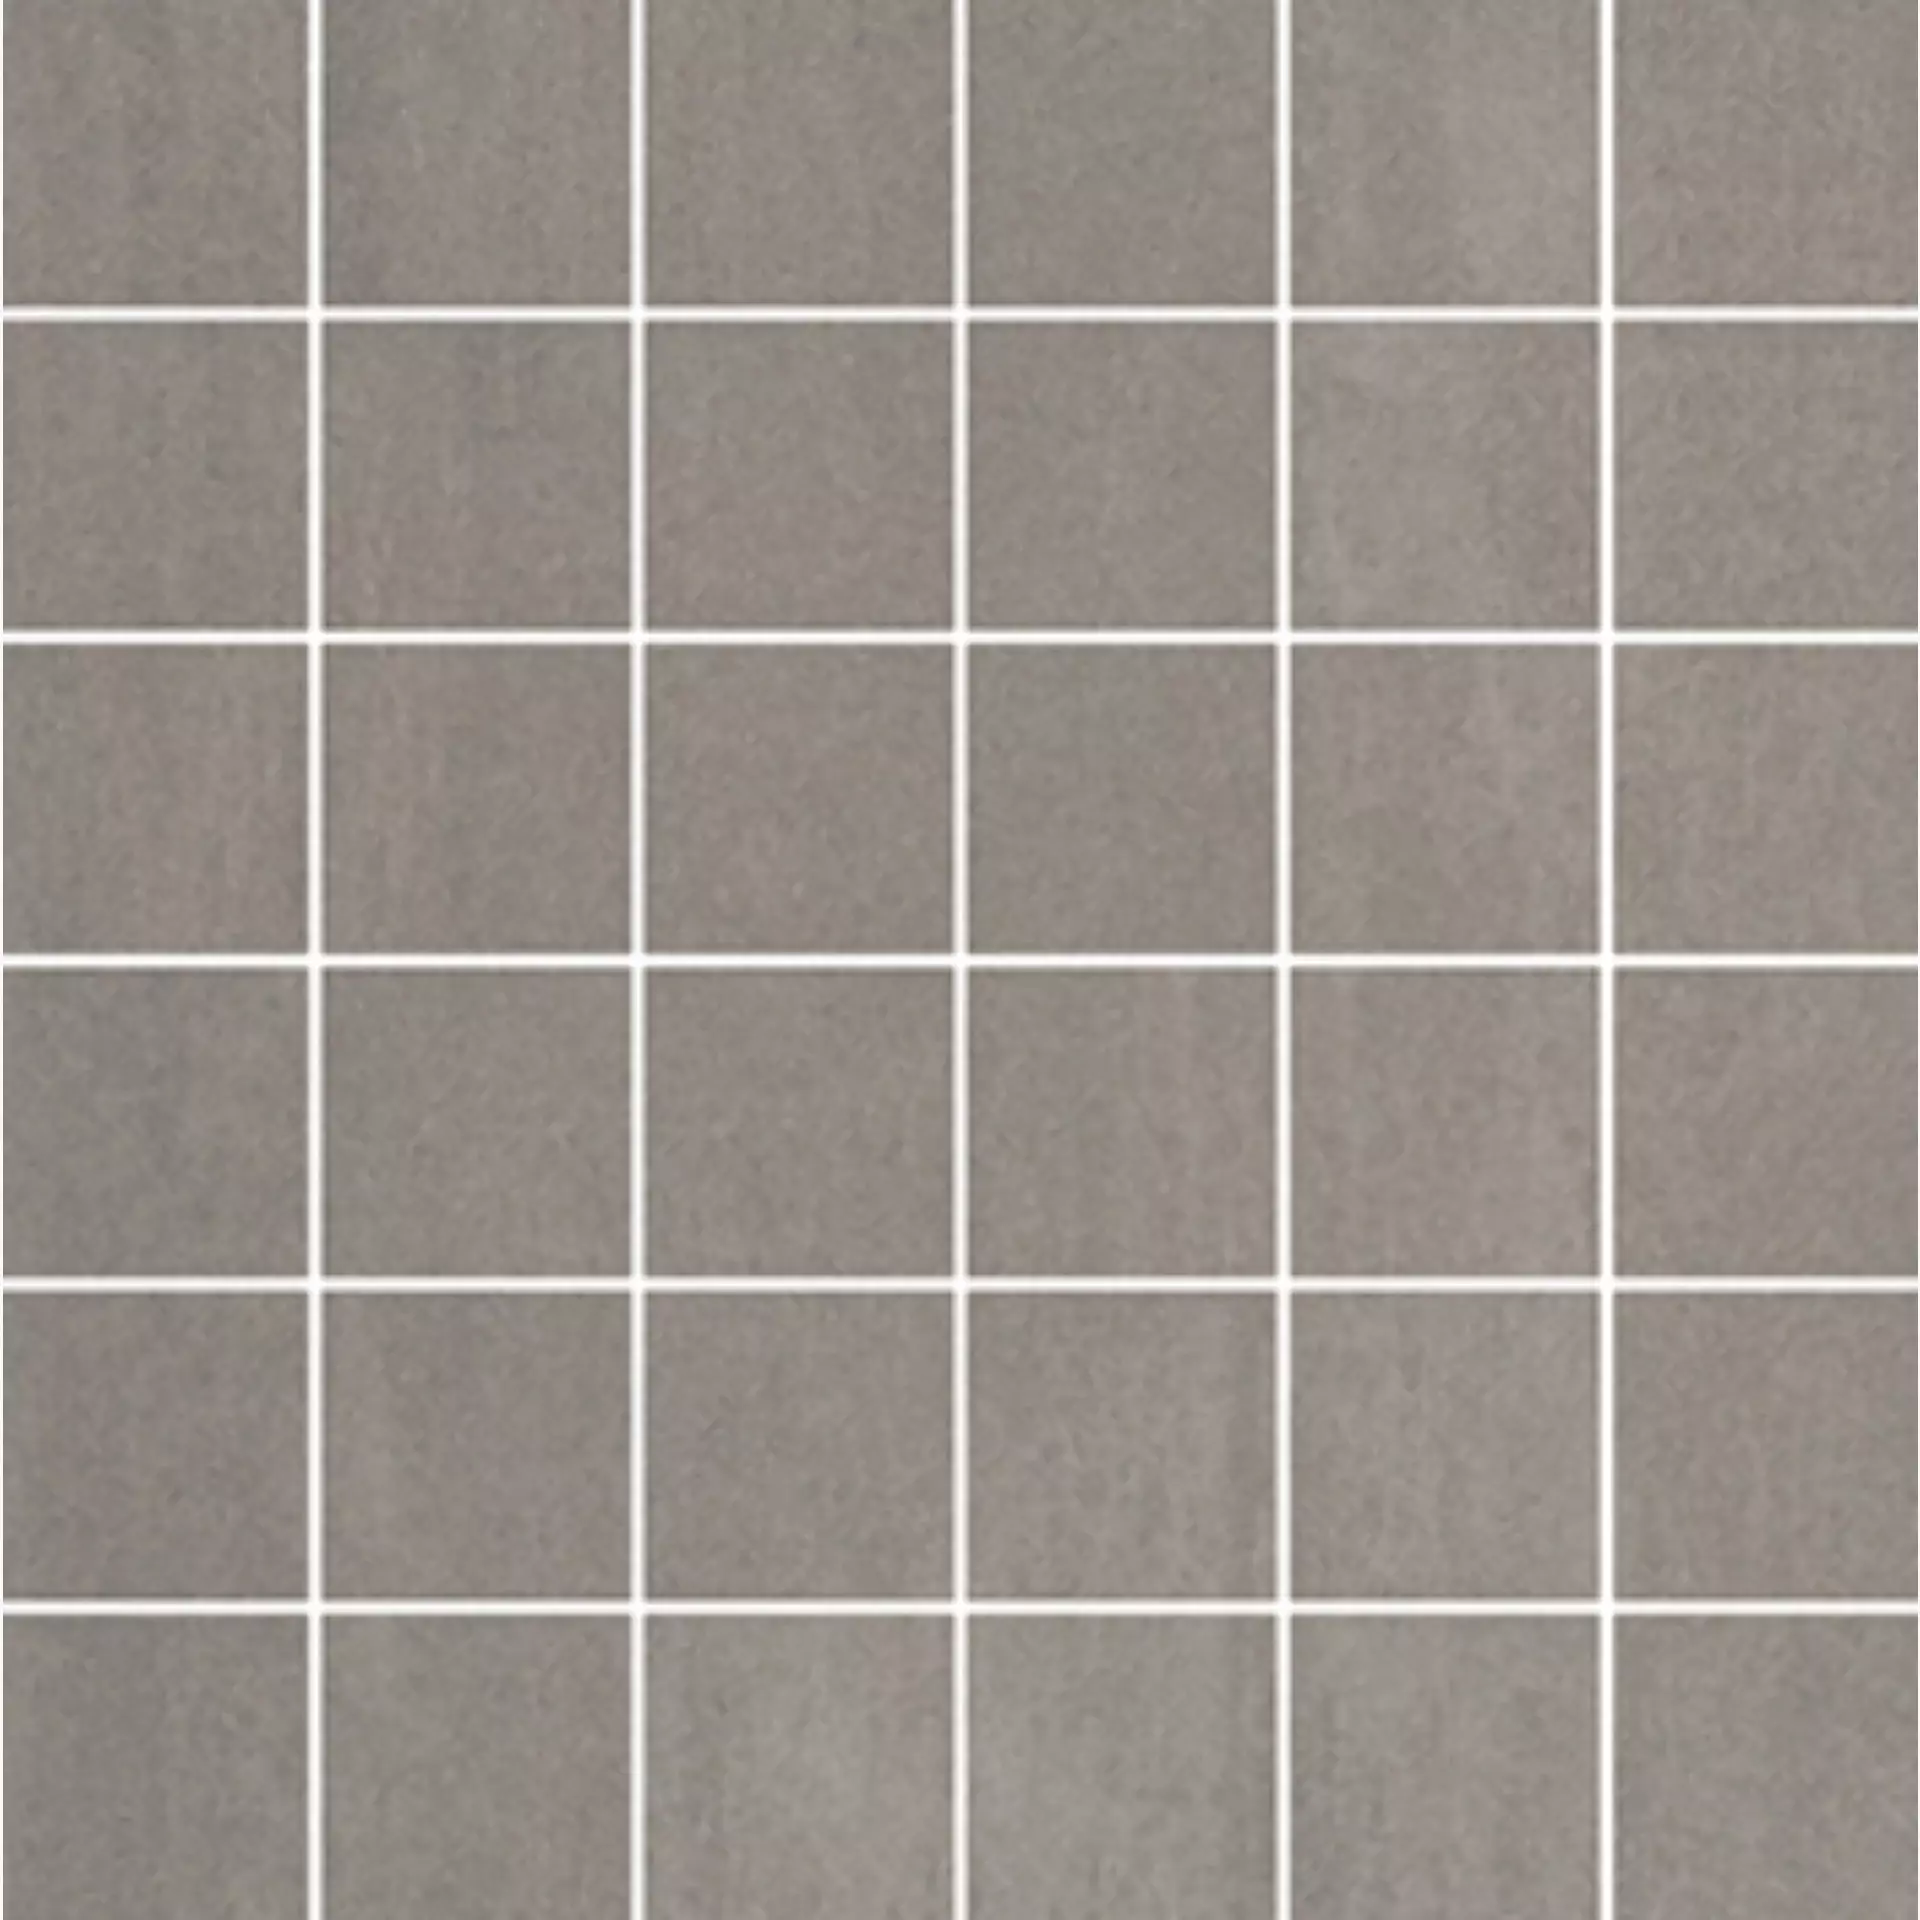 Wandfliese,Bodenfliese Villeroy & Boch Unit Four Medium Grey Matt Medium Grey 2363-CT61 matt 5x5cm Mosaik (5x5) rektifiziert 10mm